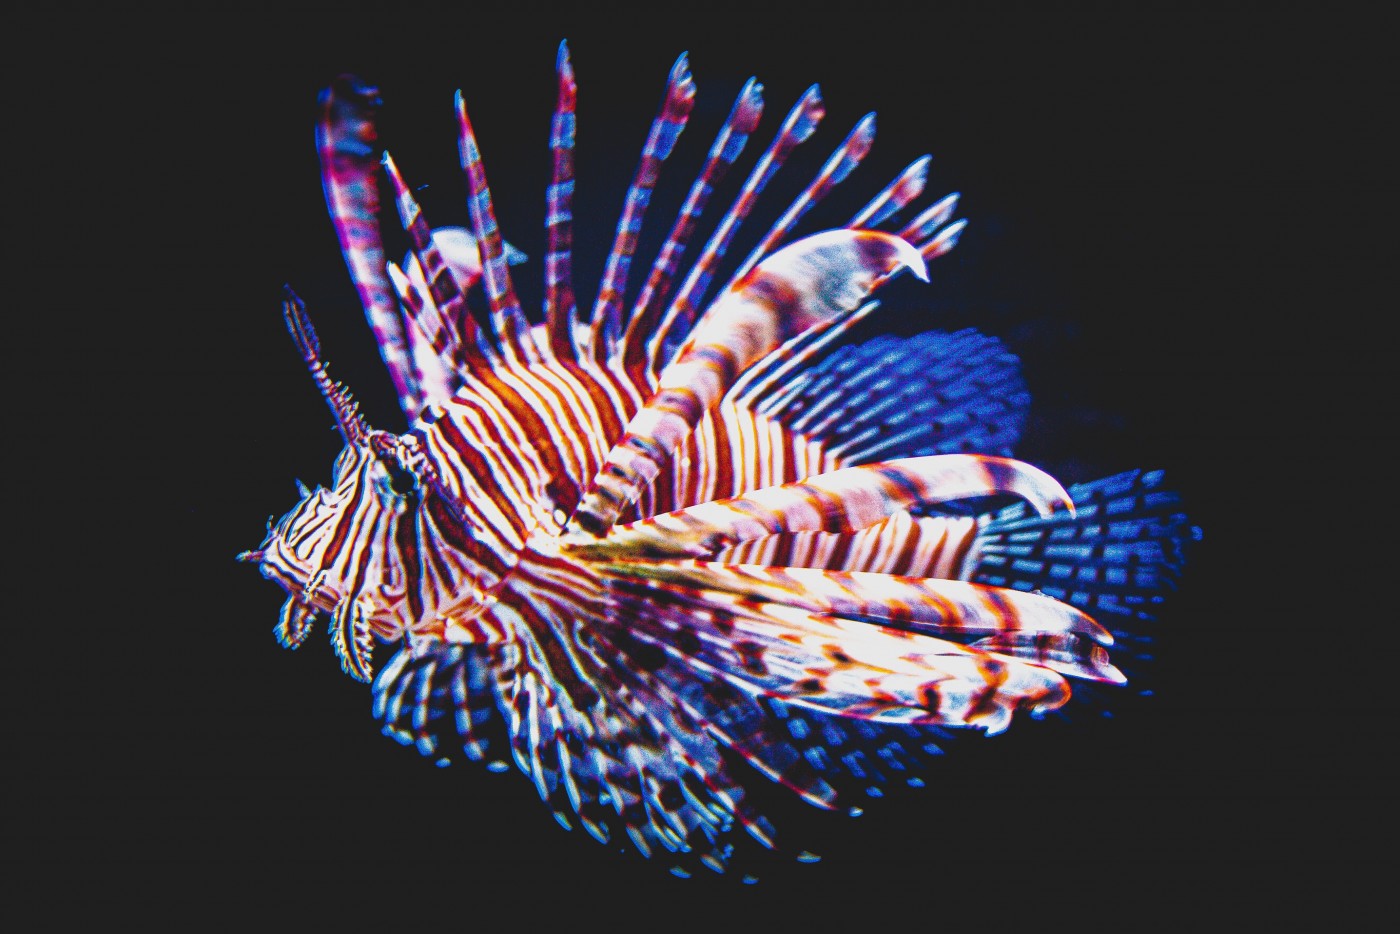 色彩斑斓的刺鼻绿鳍鱼 库存照片. 图片 包括有 摄影, 海鲜, 栖息处, 食物, 特写镜头, 水生, 背包 - 233019730